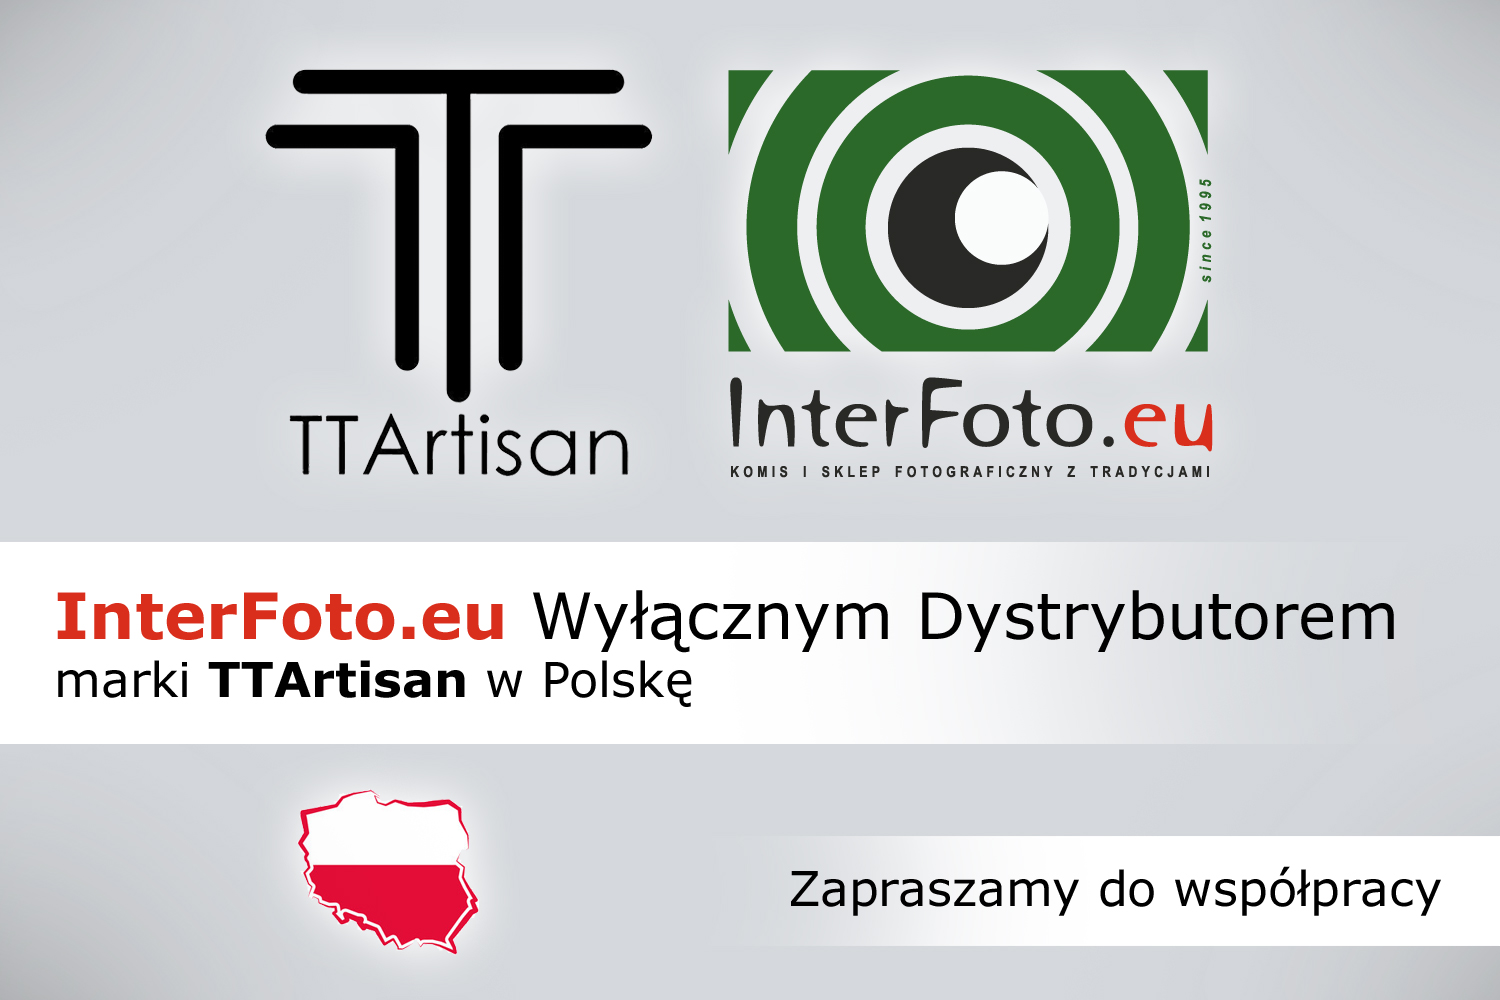 InterFoto.eu Wyłącznym Dystrybutorem marki TTArtisan w Polsce